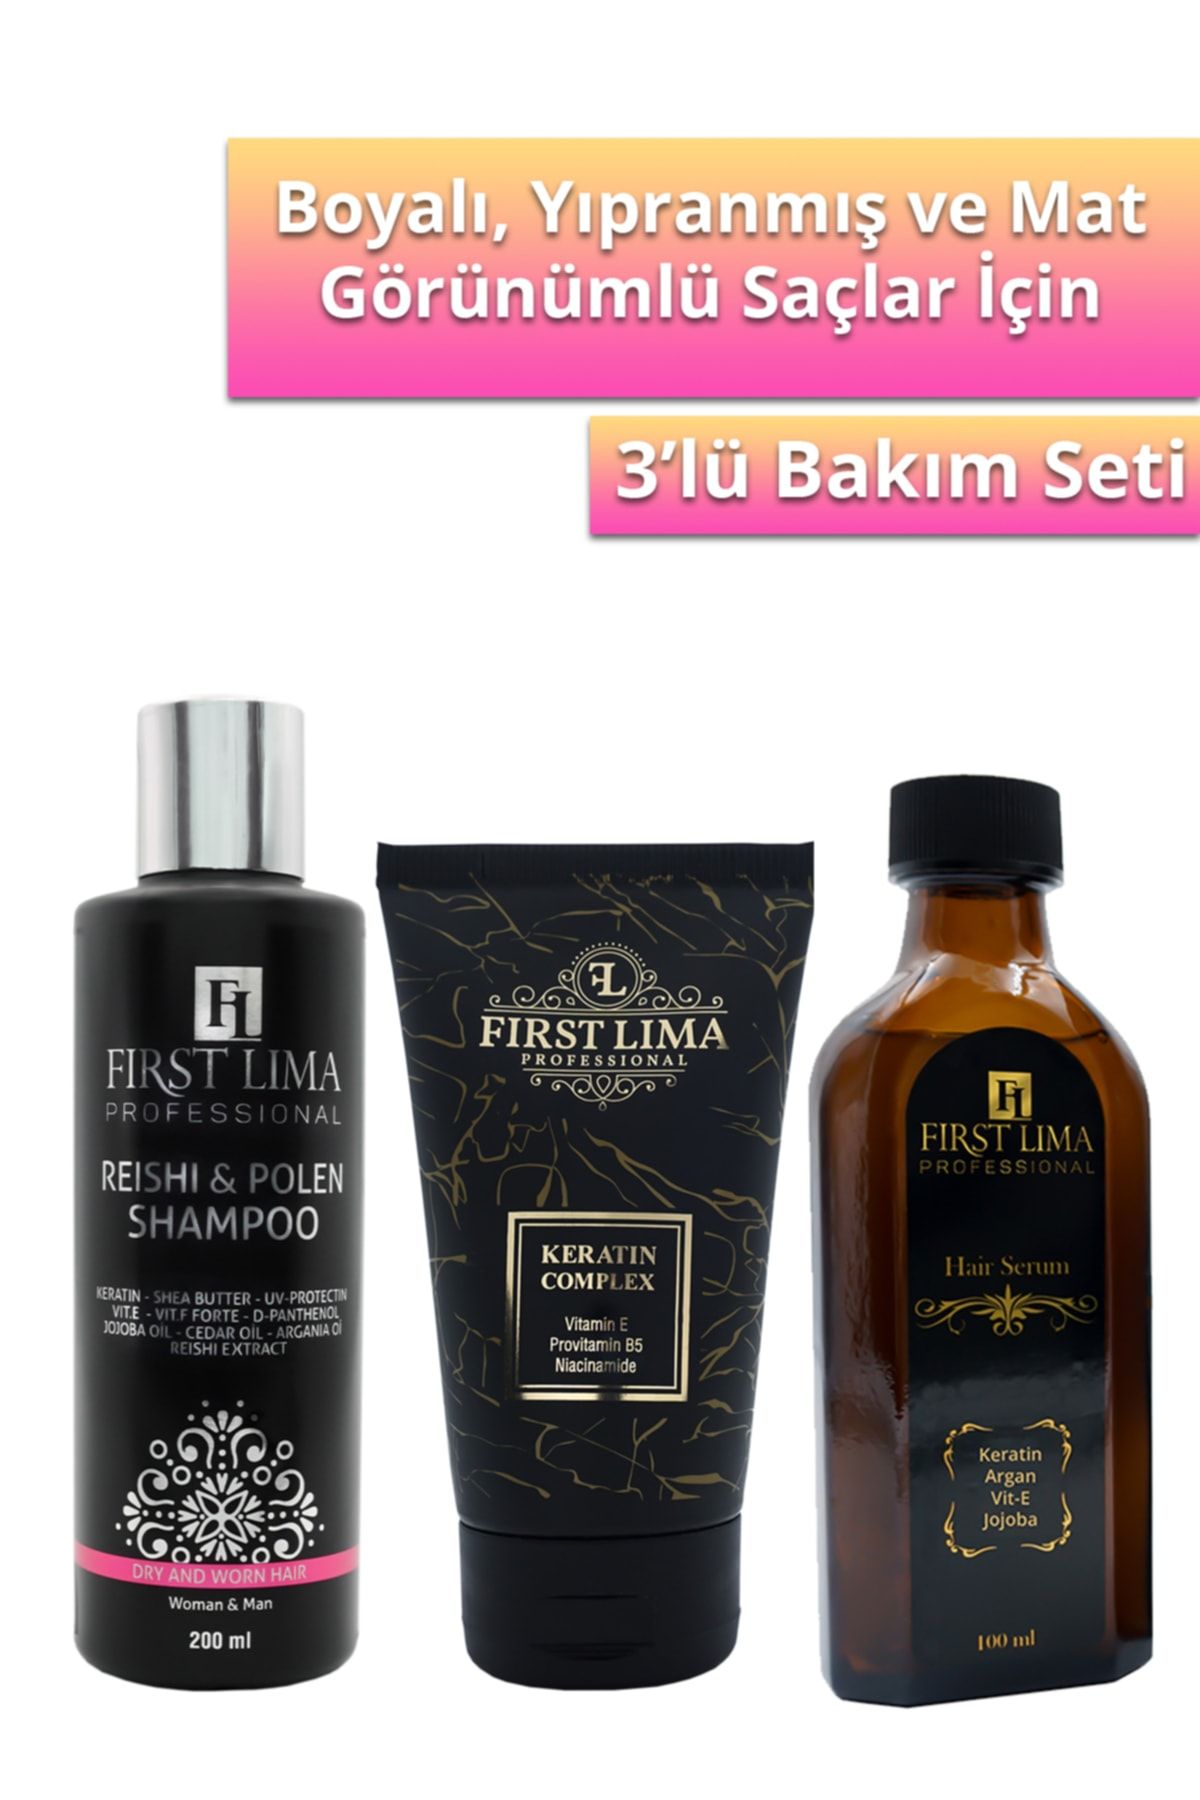 First Lima Professional Yıpranmış Karşırı Reishi & Polen Şampuan -anında Onarıcı Keratin Krem - Işıltı Veren Serum